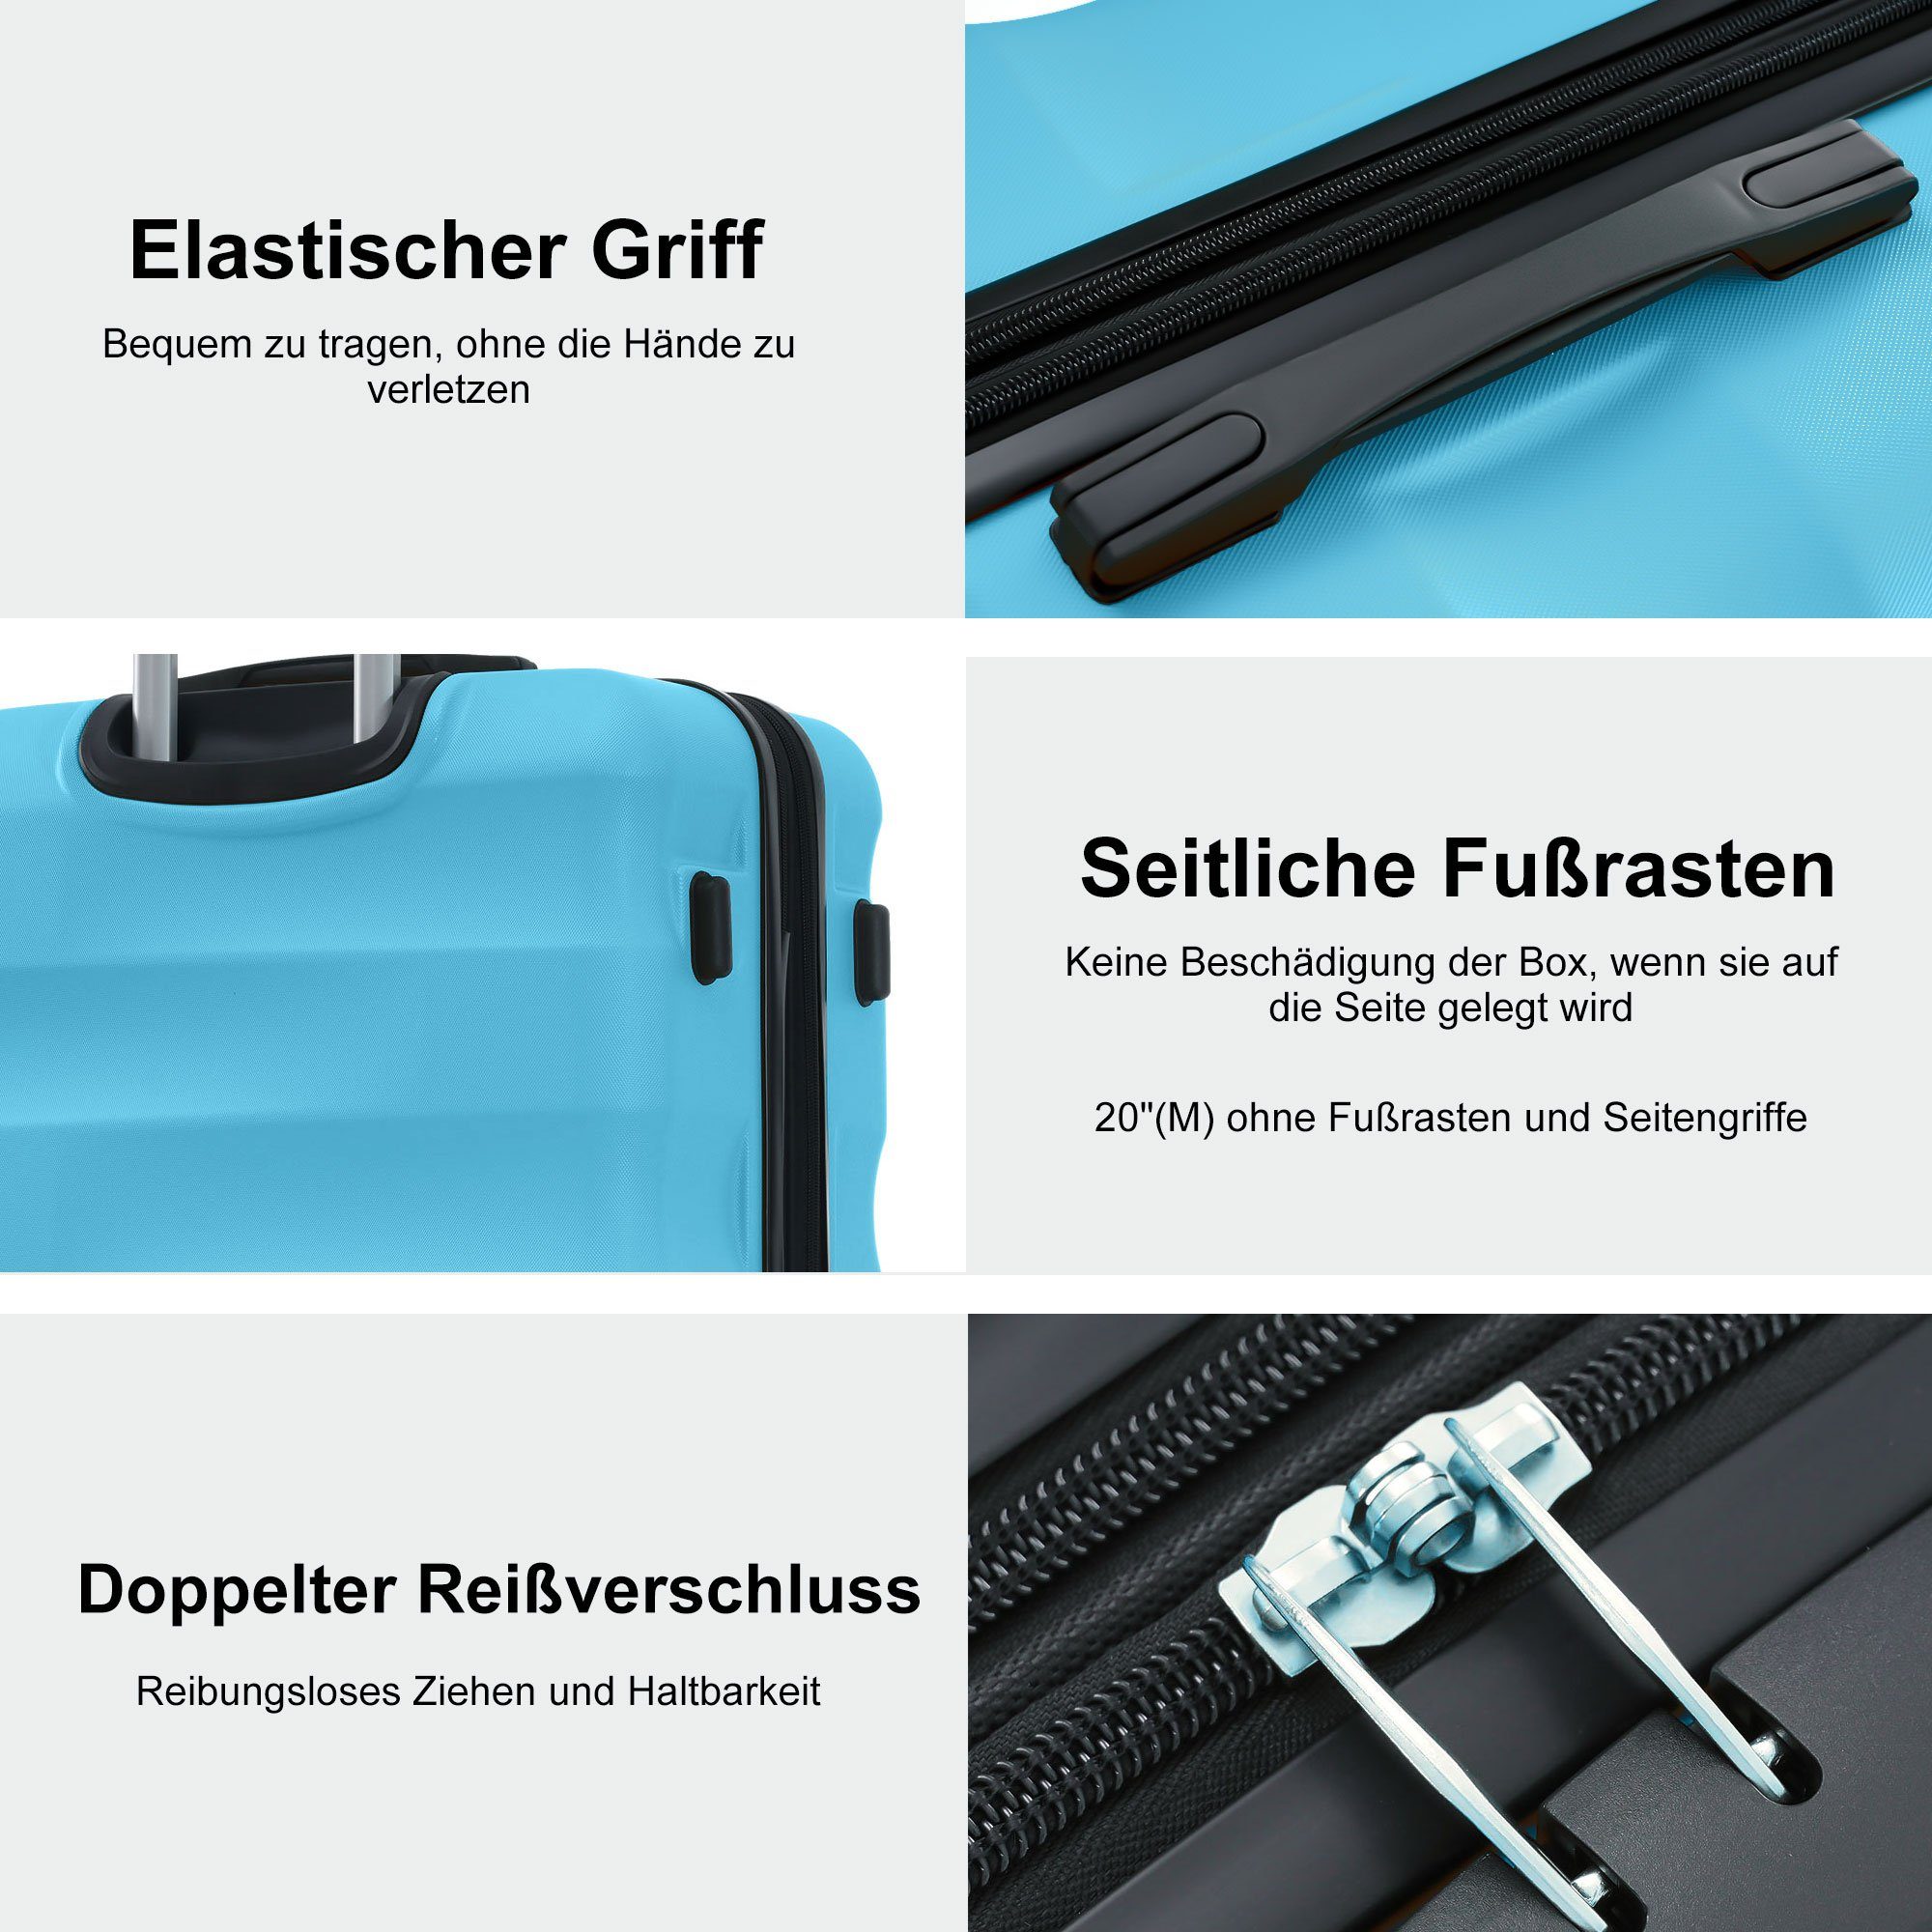 Kofferset Trolleyset TSA Blau tlg) 360° Zollschloss, 4 Ulife ABS-Material, (3 Rollen, -Räder, Reisekoffer